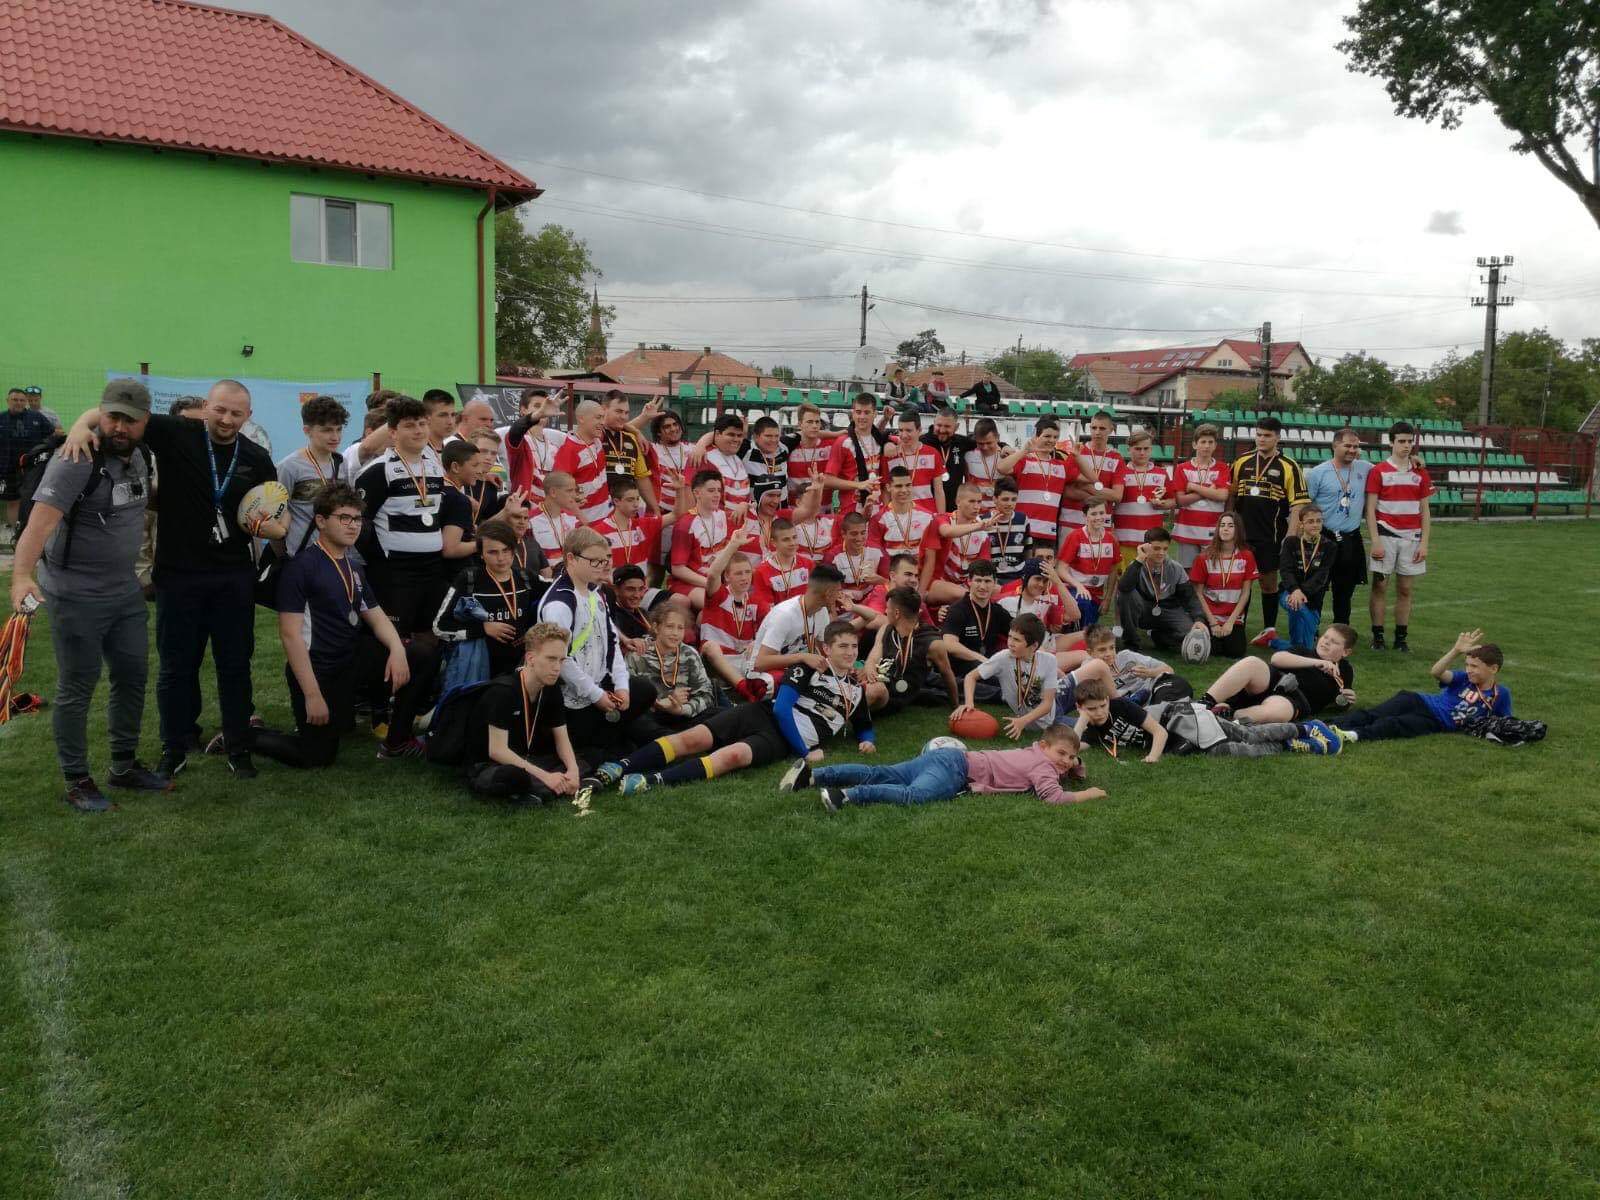 Rugby pentru juniori la Dumbrăvița